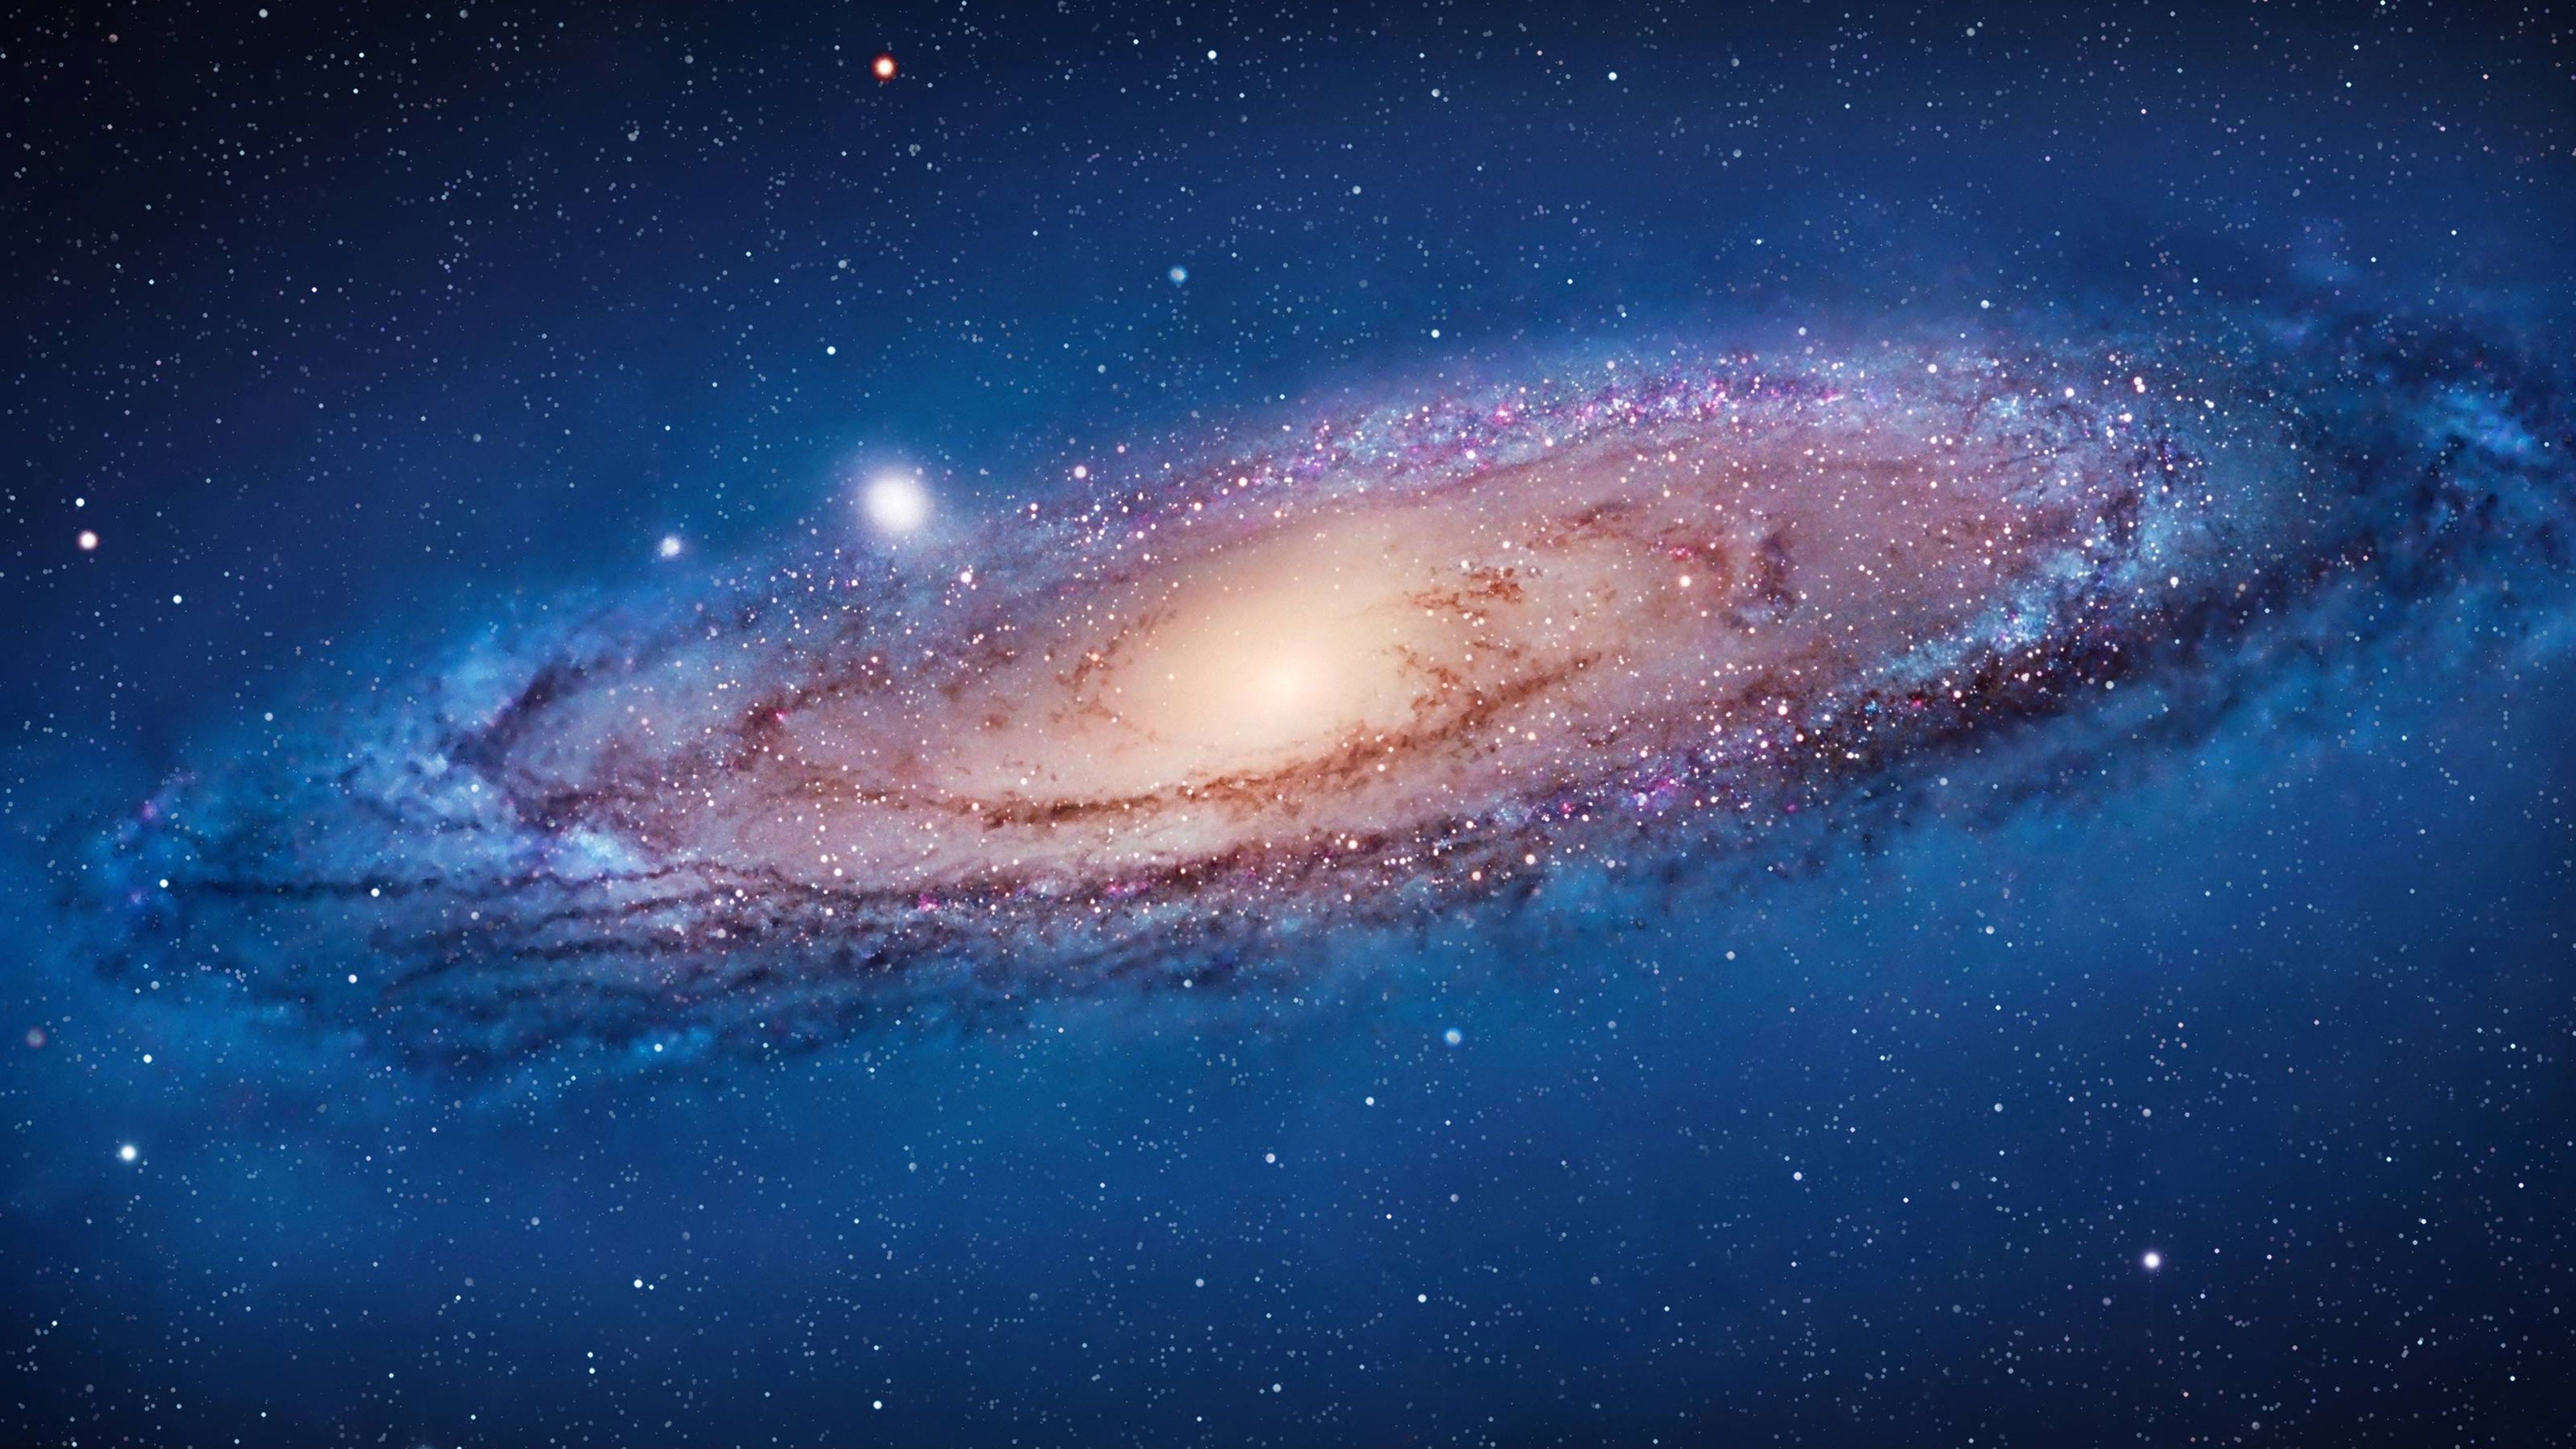 Hãy chuẩn bị mở mang tầm mắt của bạn với những hình ảnh tuyệt vời về vệ tinh của chúng ta, trong loạt ảnh của bộ sưu tập Milky Way Galaxy.